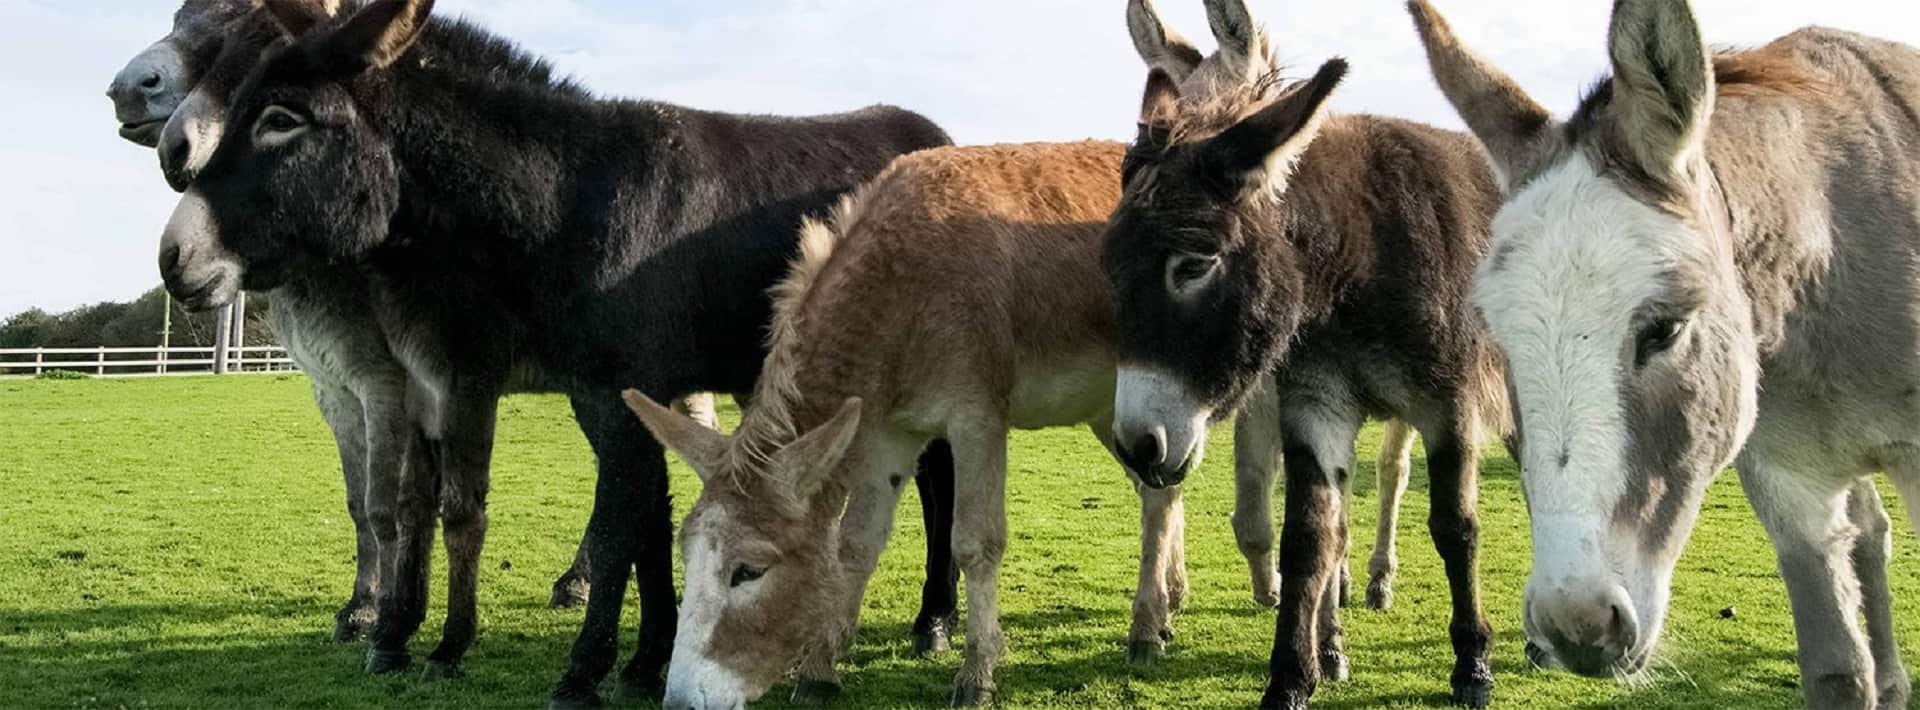 Isle Of Wight Donkey Sanctuary in UK